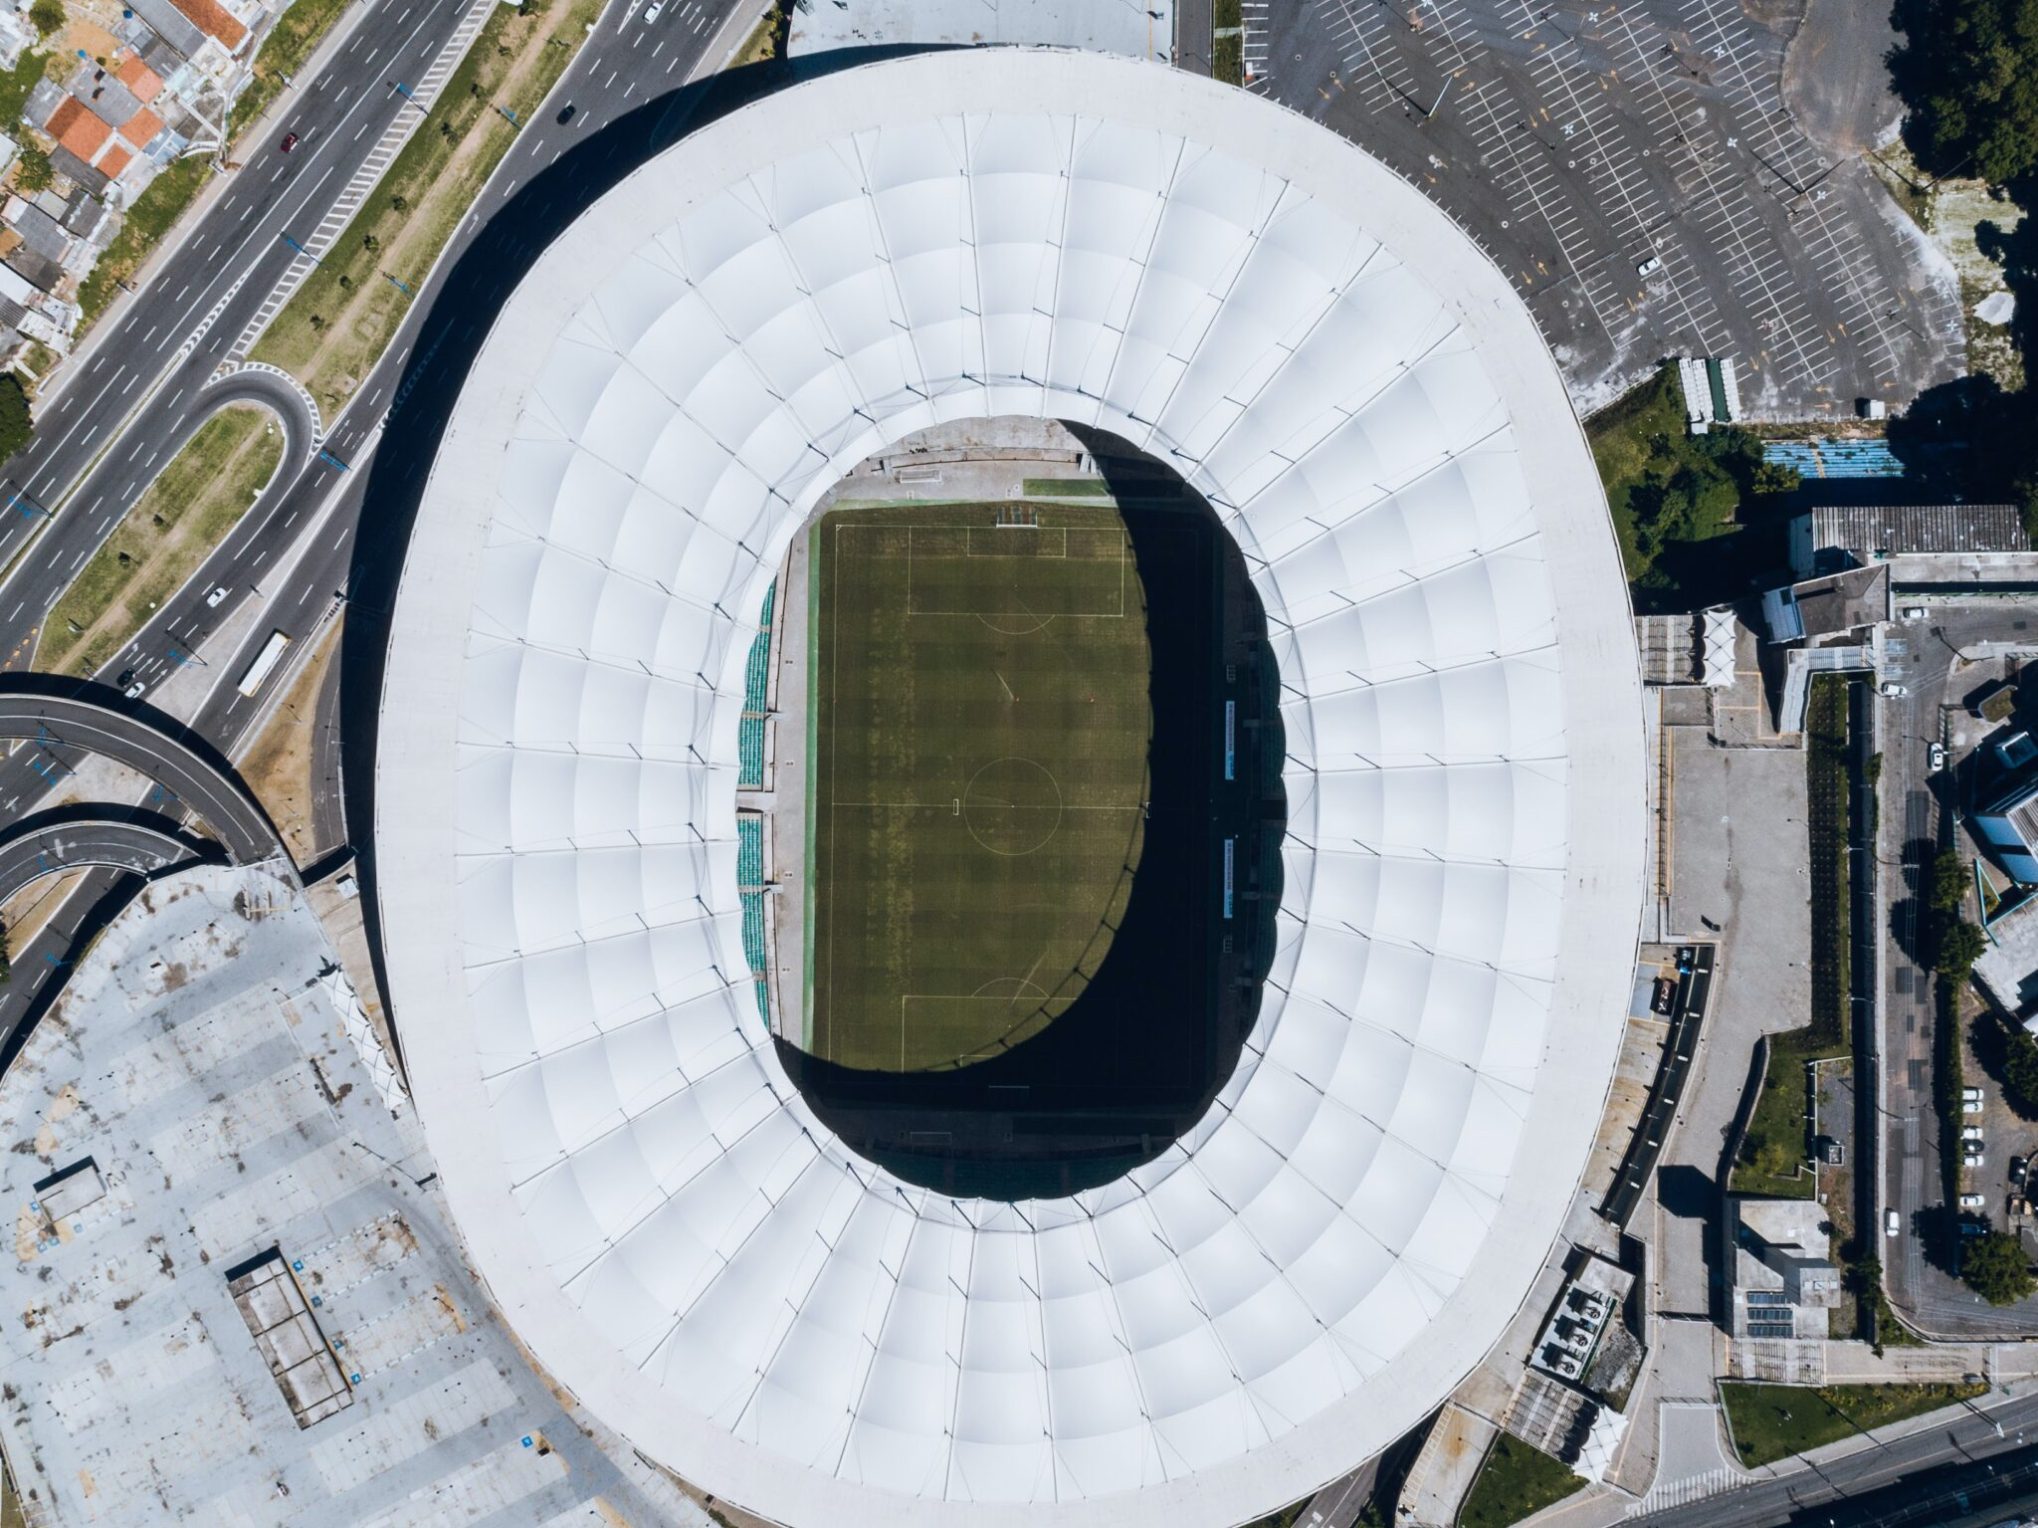 Modernização Tecnológica nos Estádios Brasileiros: Reconhecimento Facial Será Obrigatório em 2025